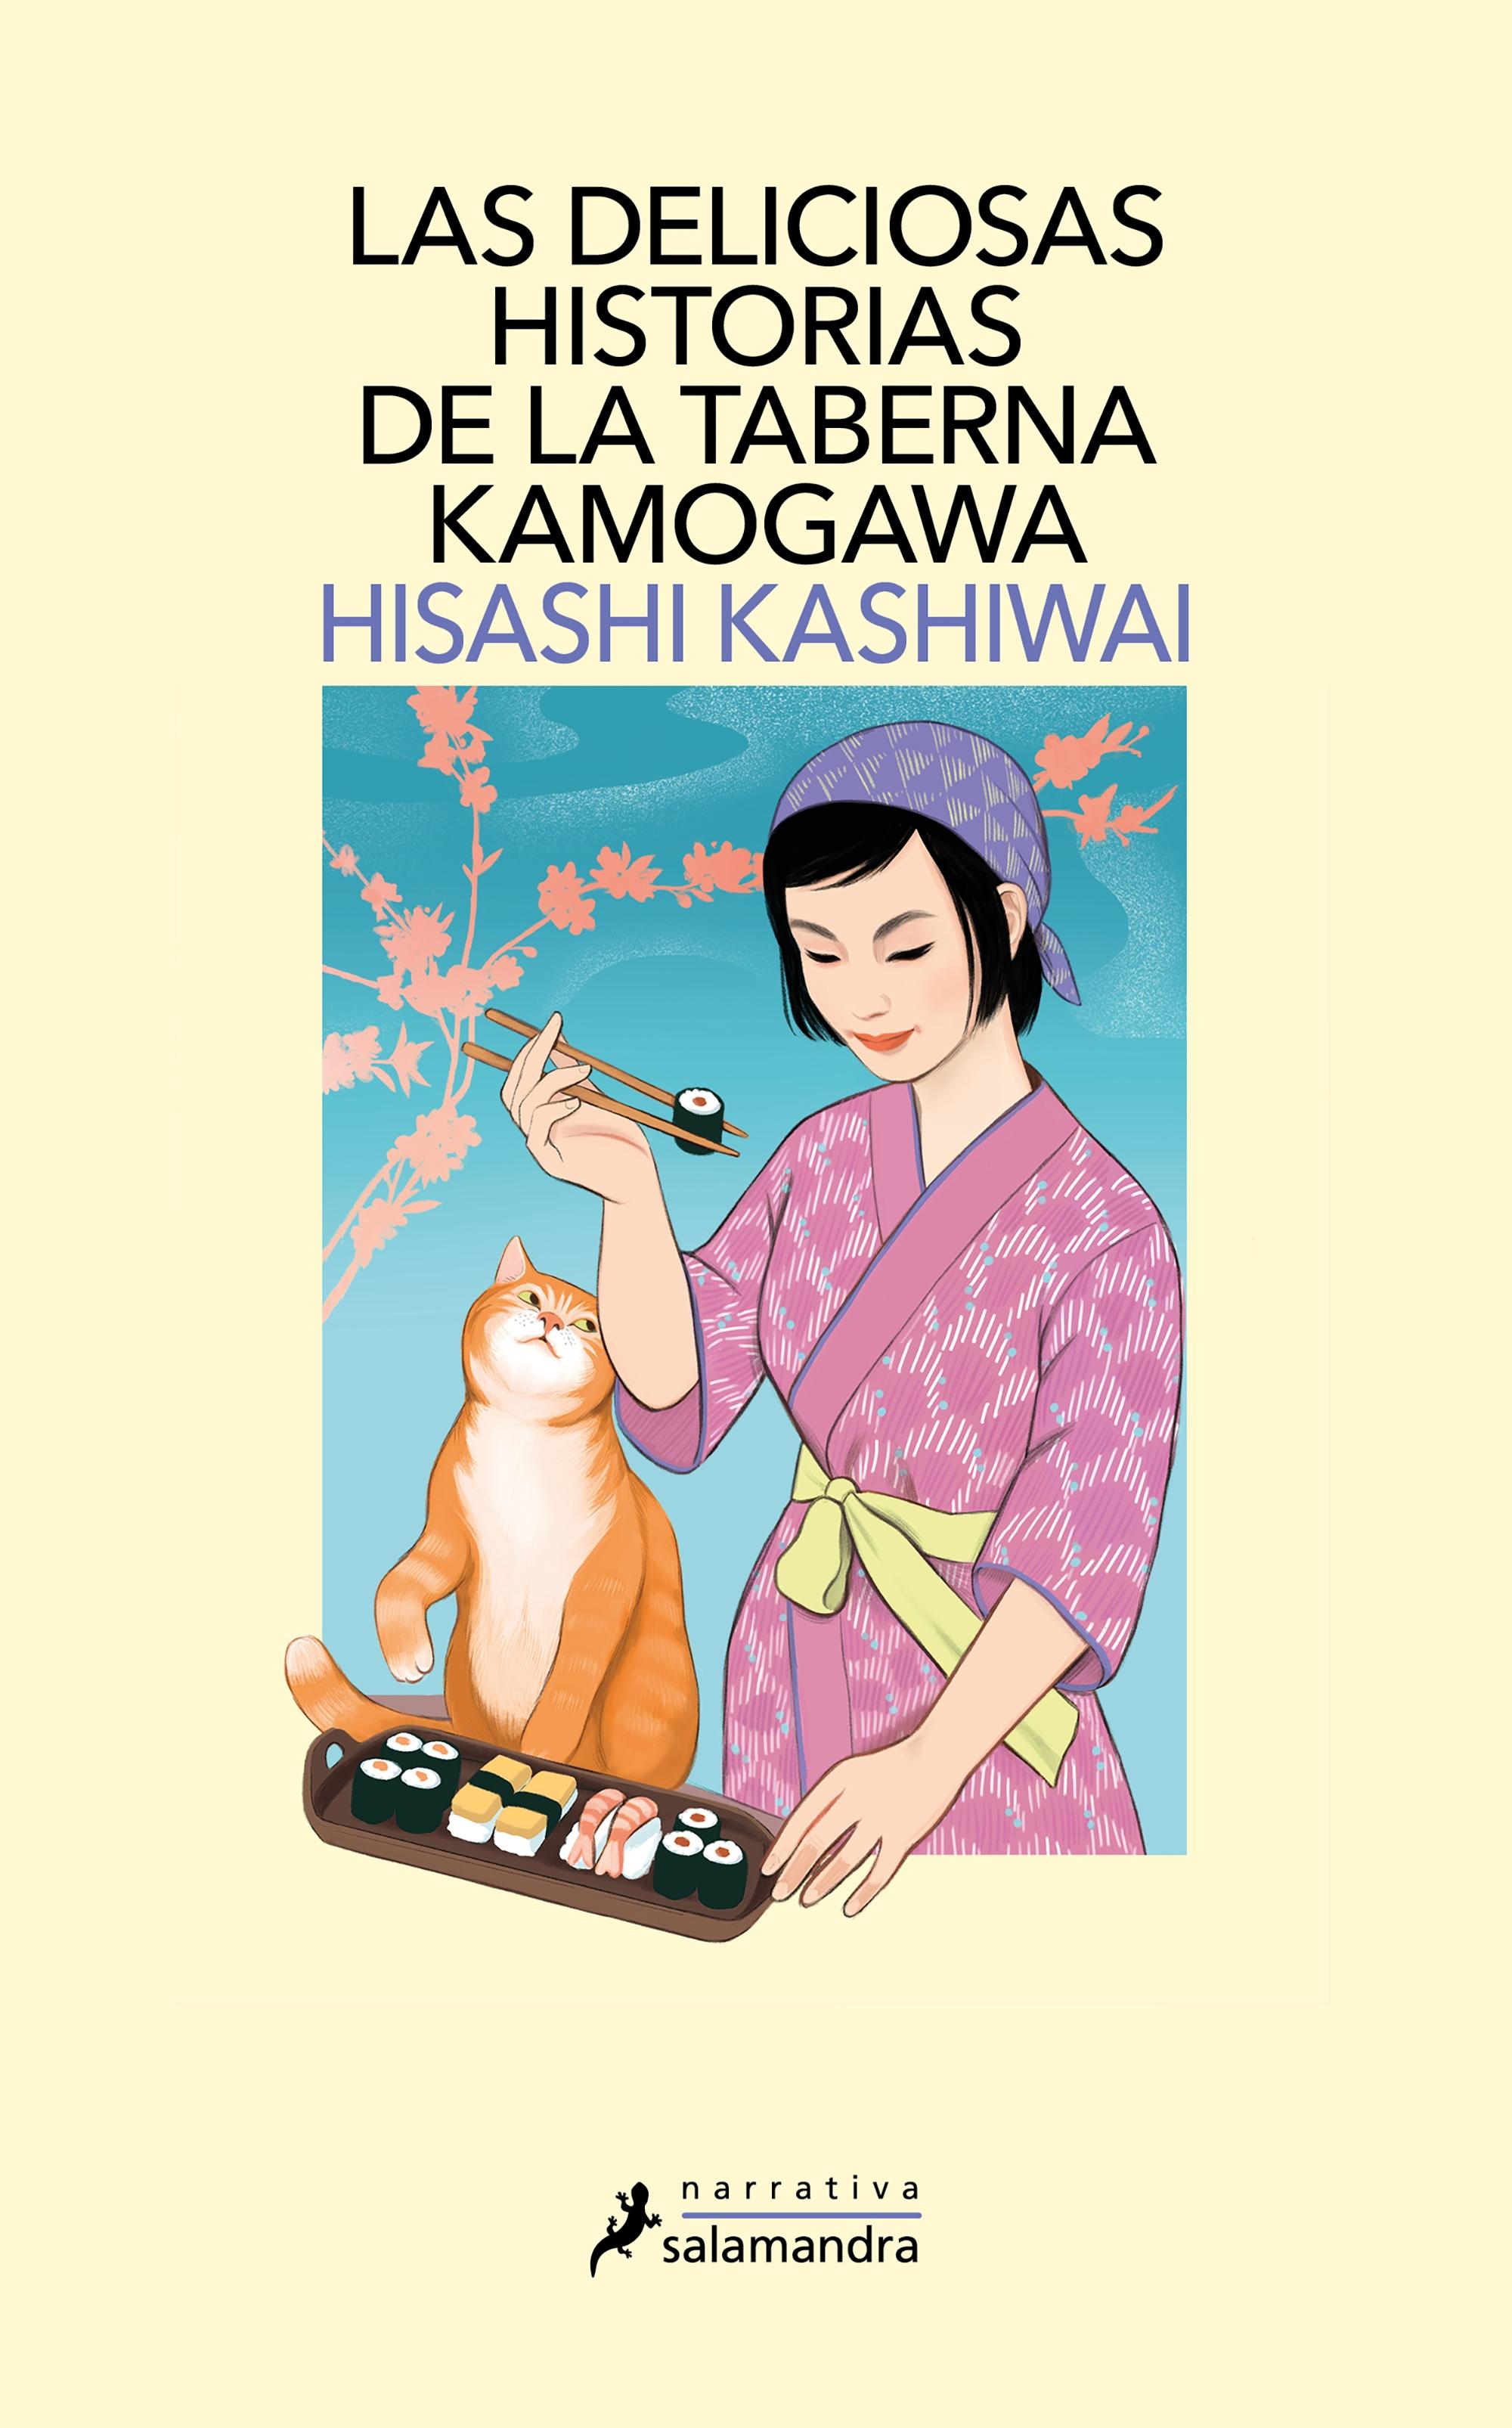 Las deliciosas historias de la taberna Kamogawa (Los misterios de la Taberna Kamogawa 2)